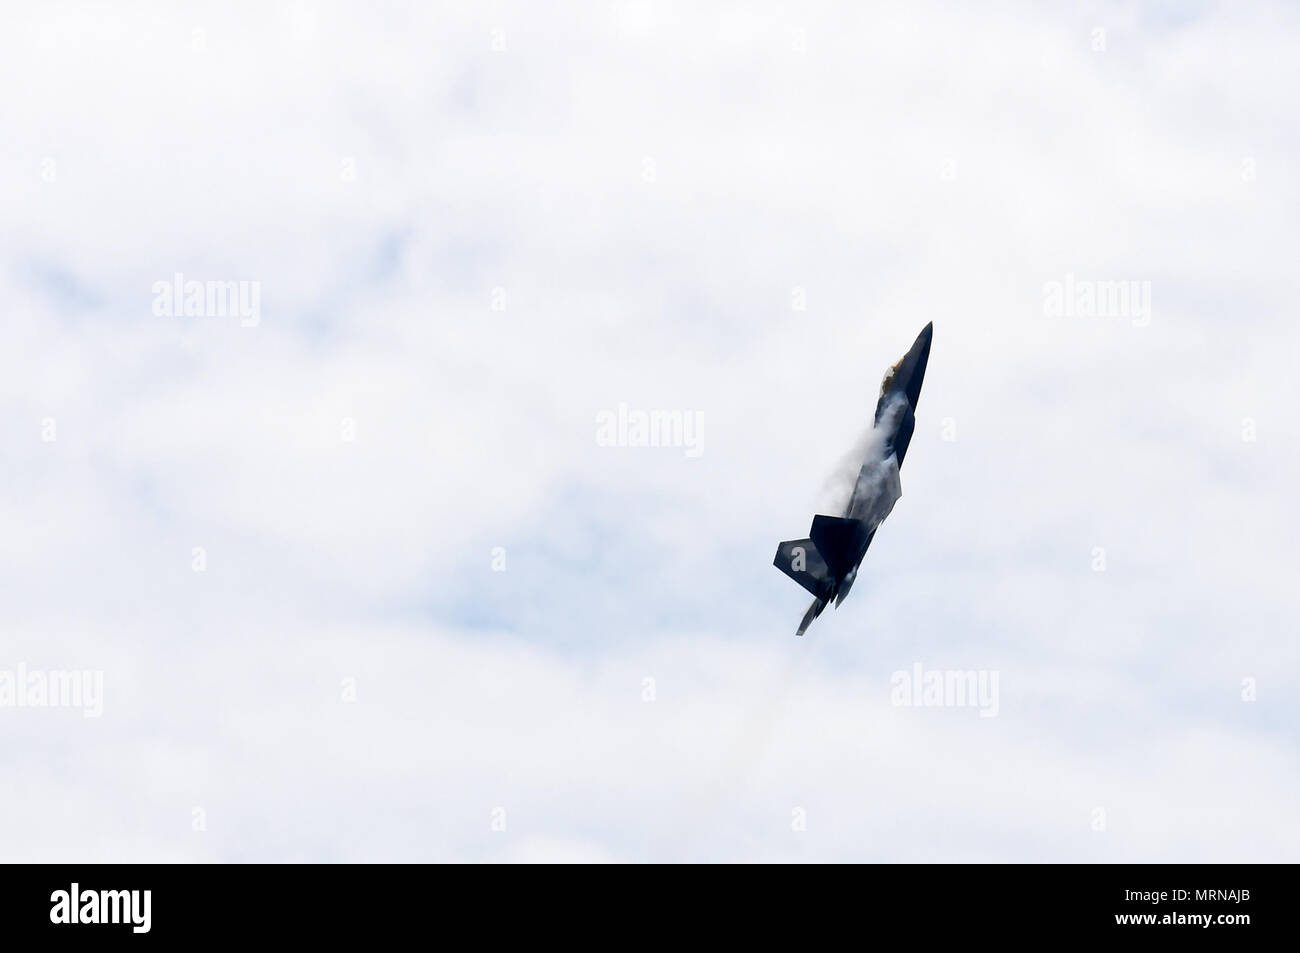 New York, USA. 26 mai, 2018. Un U.S. Air Force F-22 Raptor effectue au cours de la 15e édition annuelle de Bethpage Air Show sur la plage Jones à New York, États-Unis, le 26 mai 2018. Crédit : Li Rui/Xinhua/Alamy Live News Banque D'Images